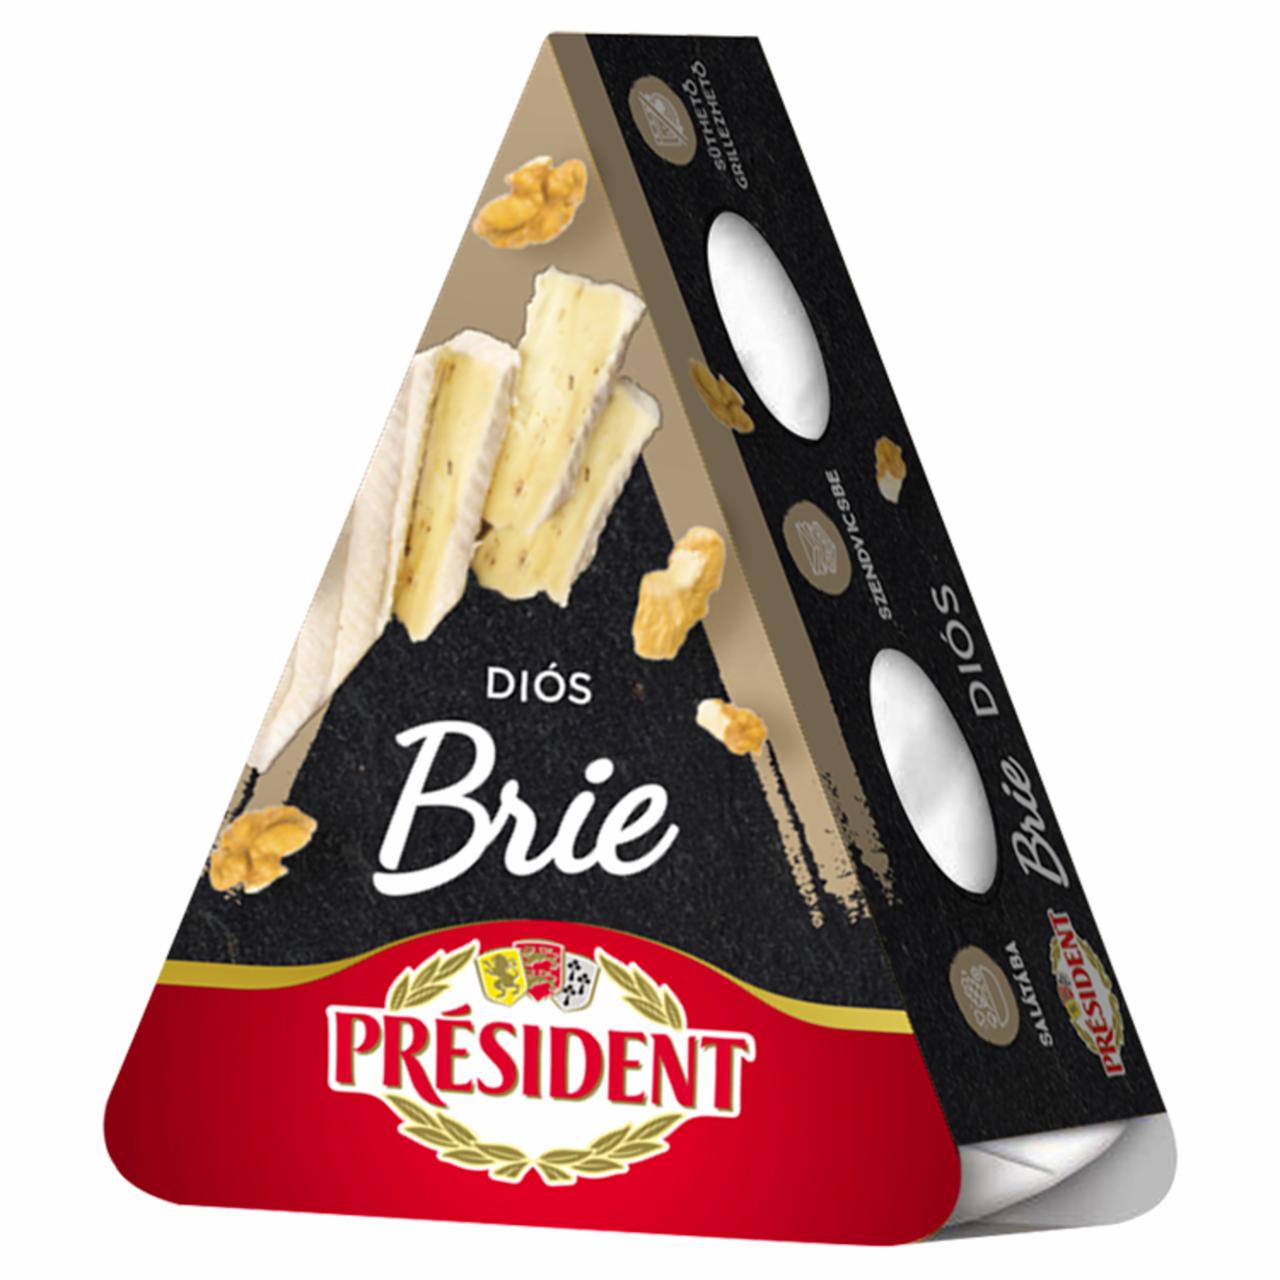 Képek - Président Brie diós, zsírdús sajt 125 g